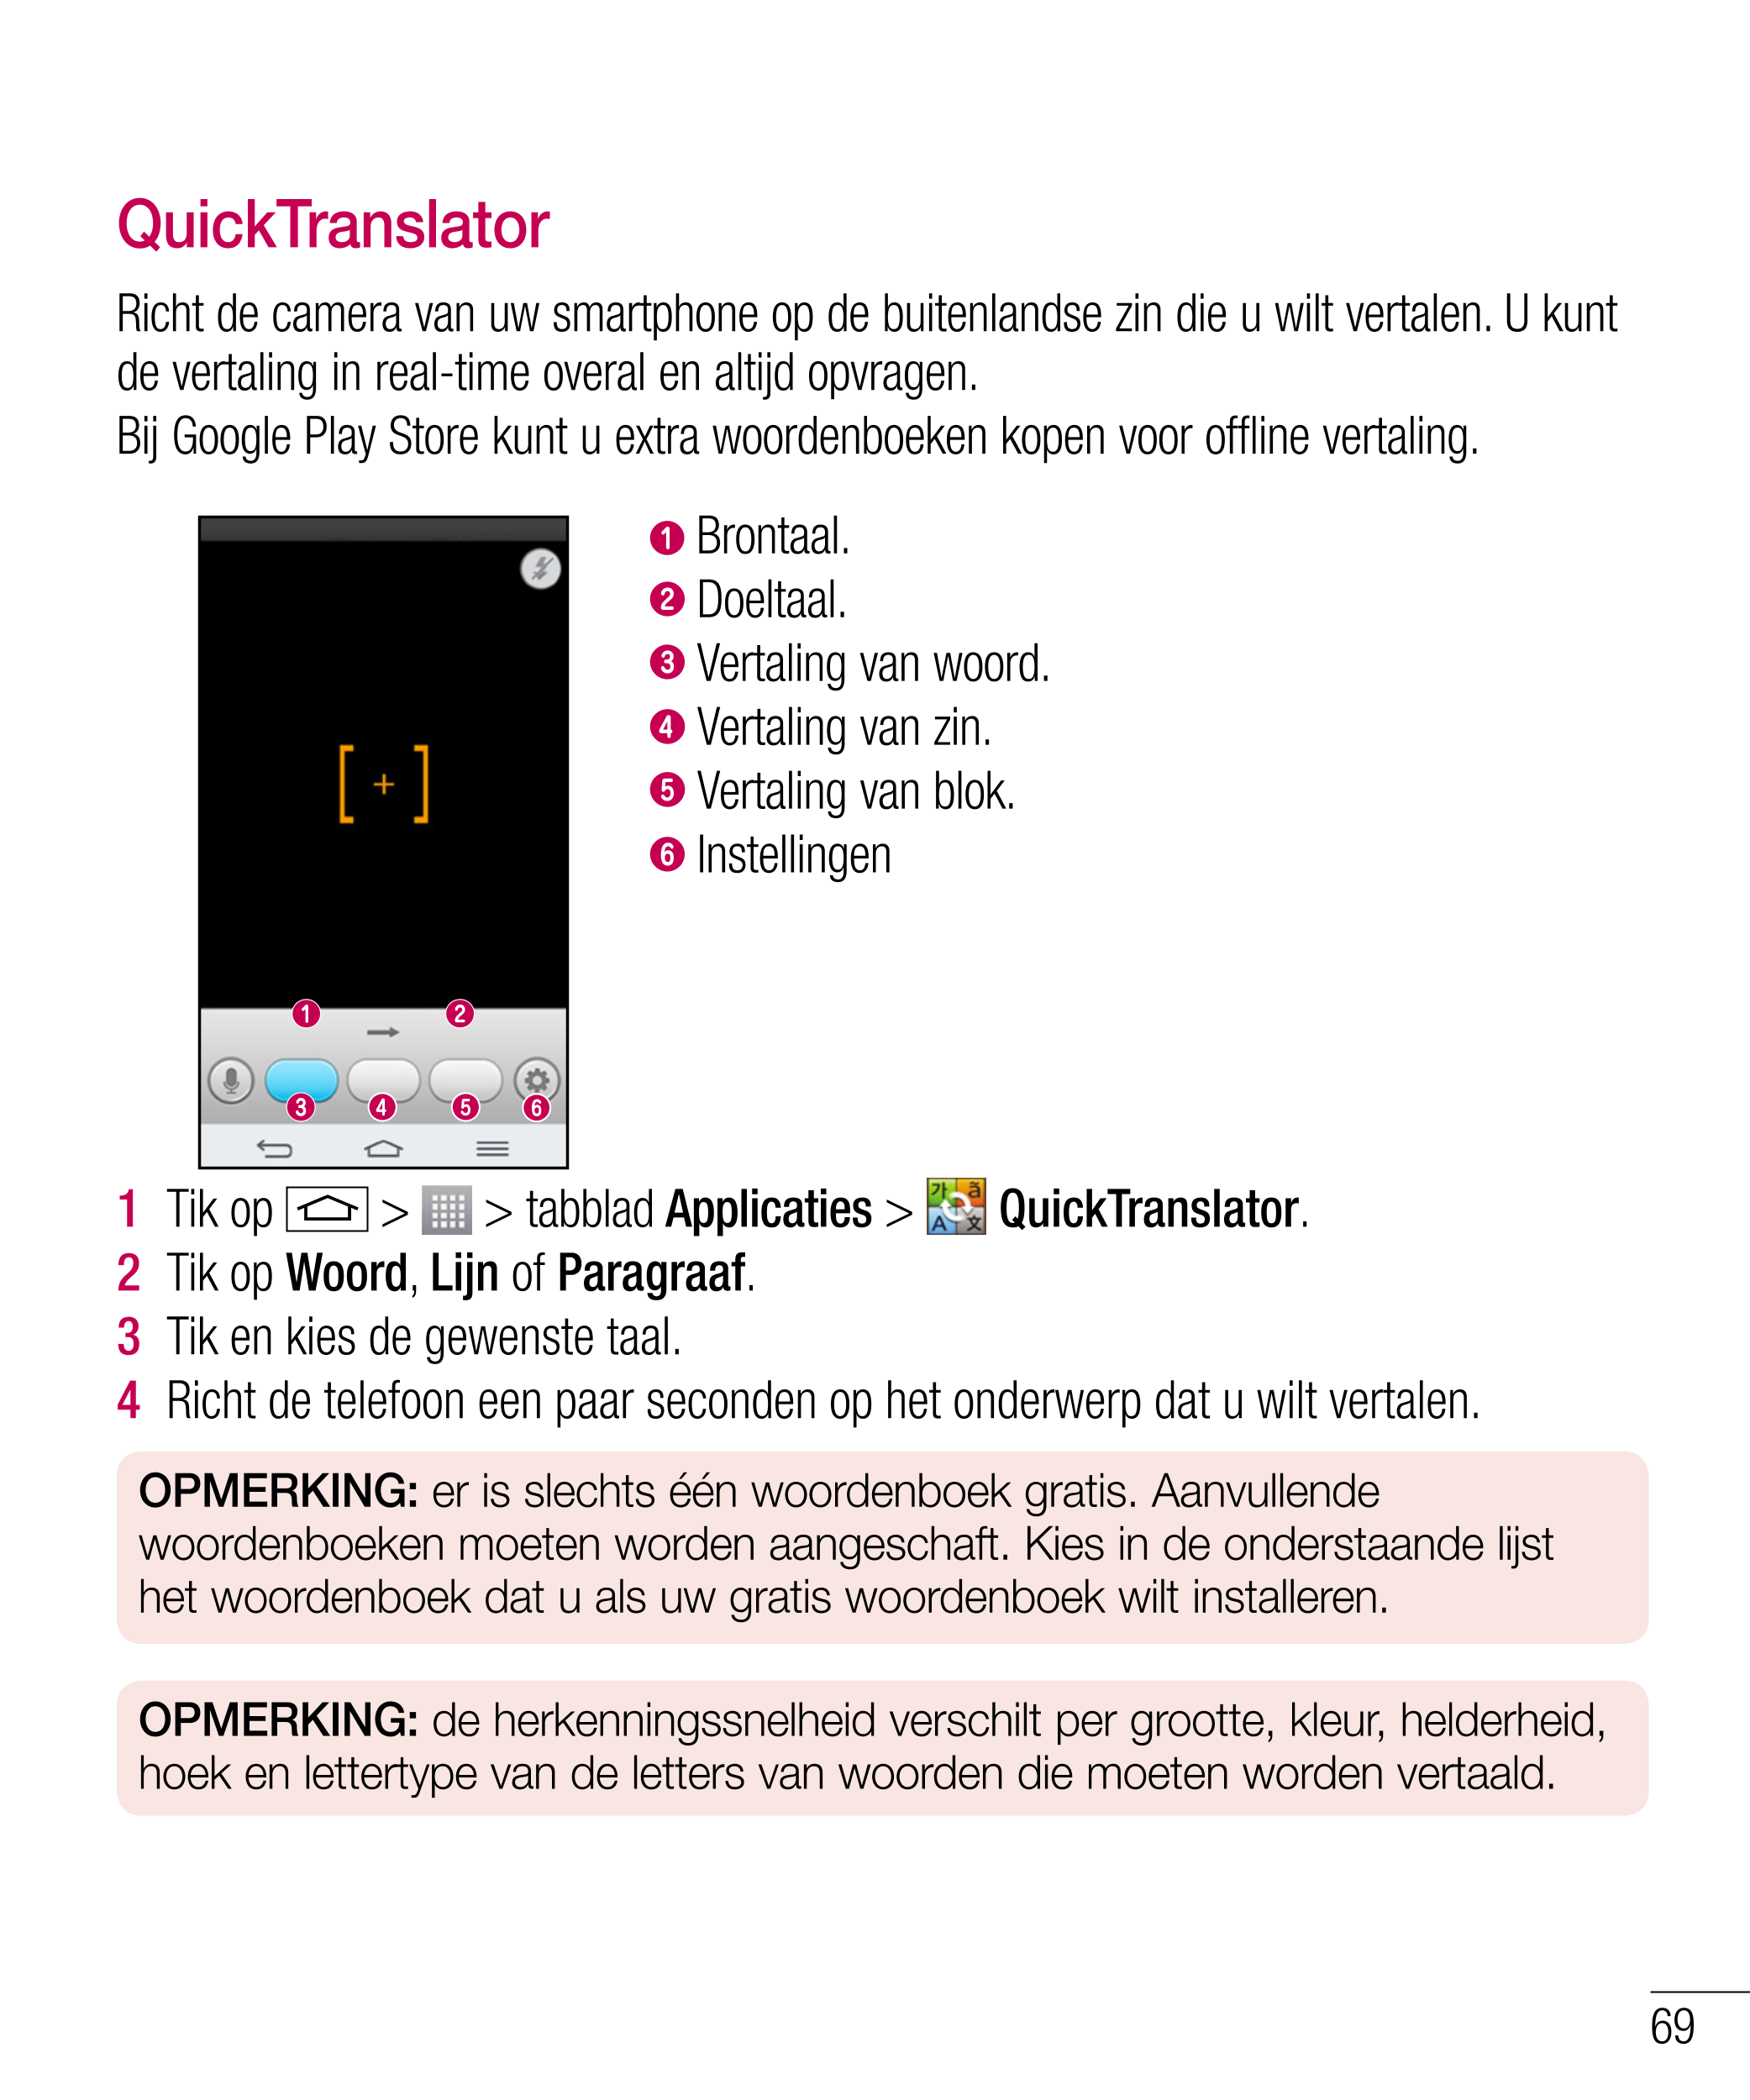 QuickTranslator
Richt de camera van uw smartphone op de buitenlandse zin die u wilt vertalen. U kunt 
de vertaling in real-time 